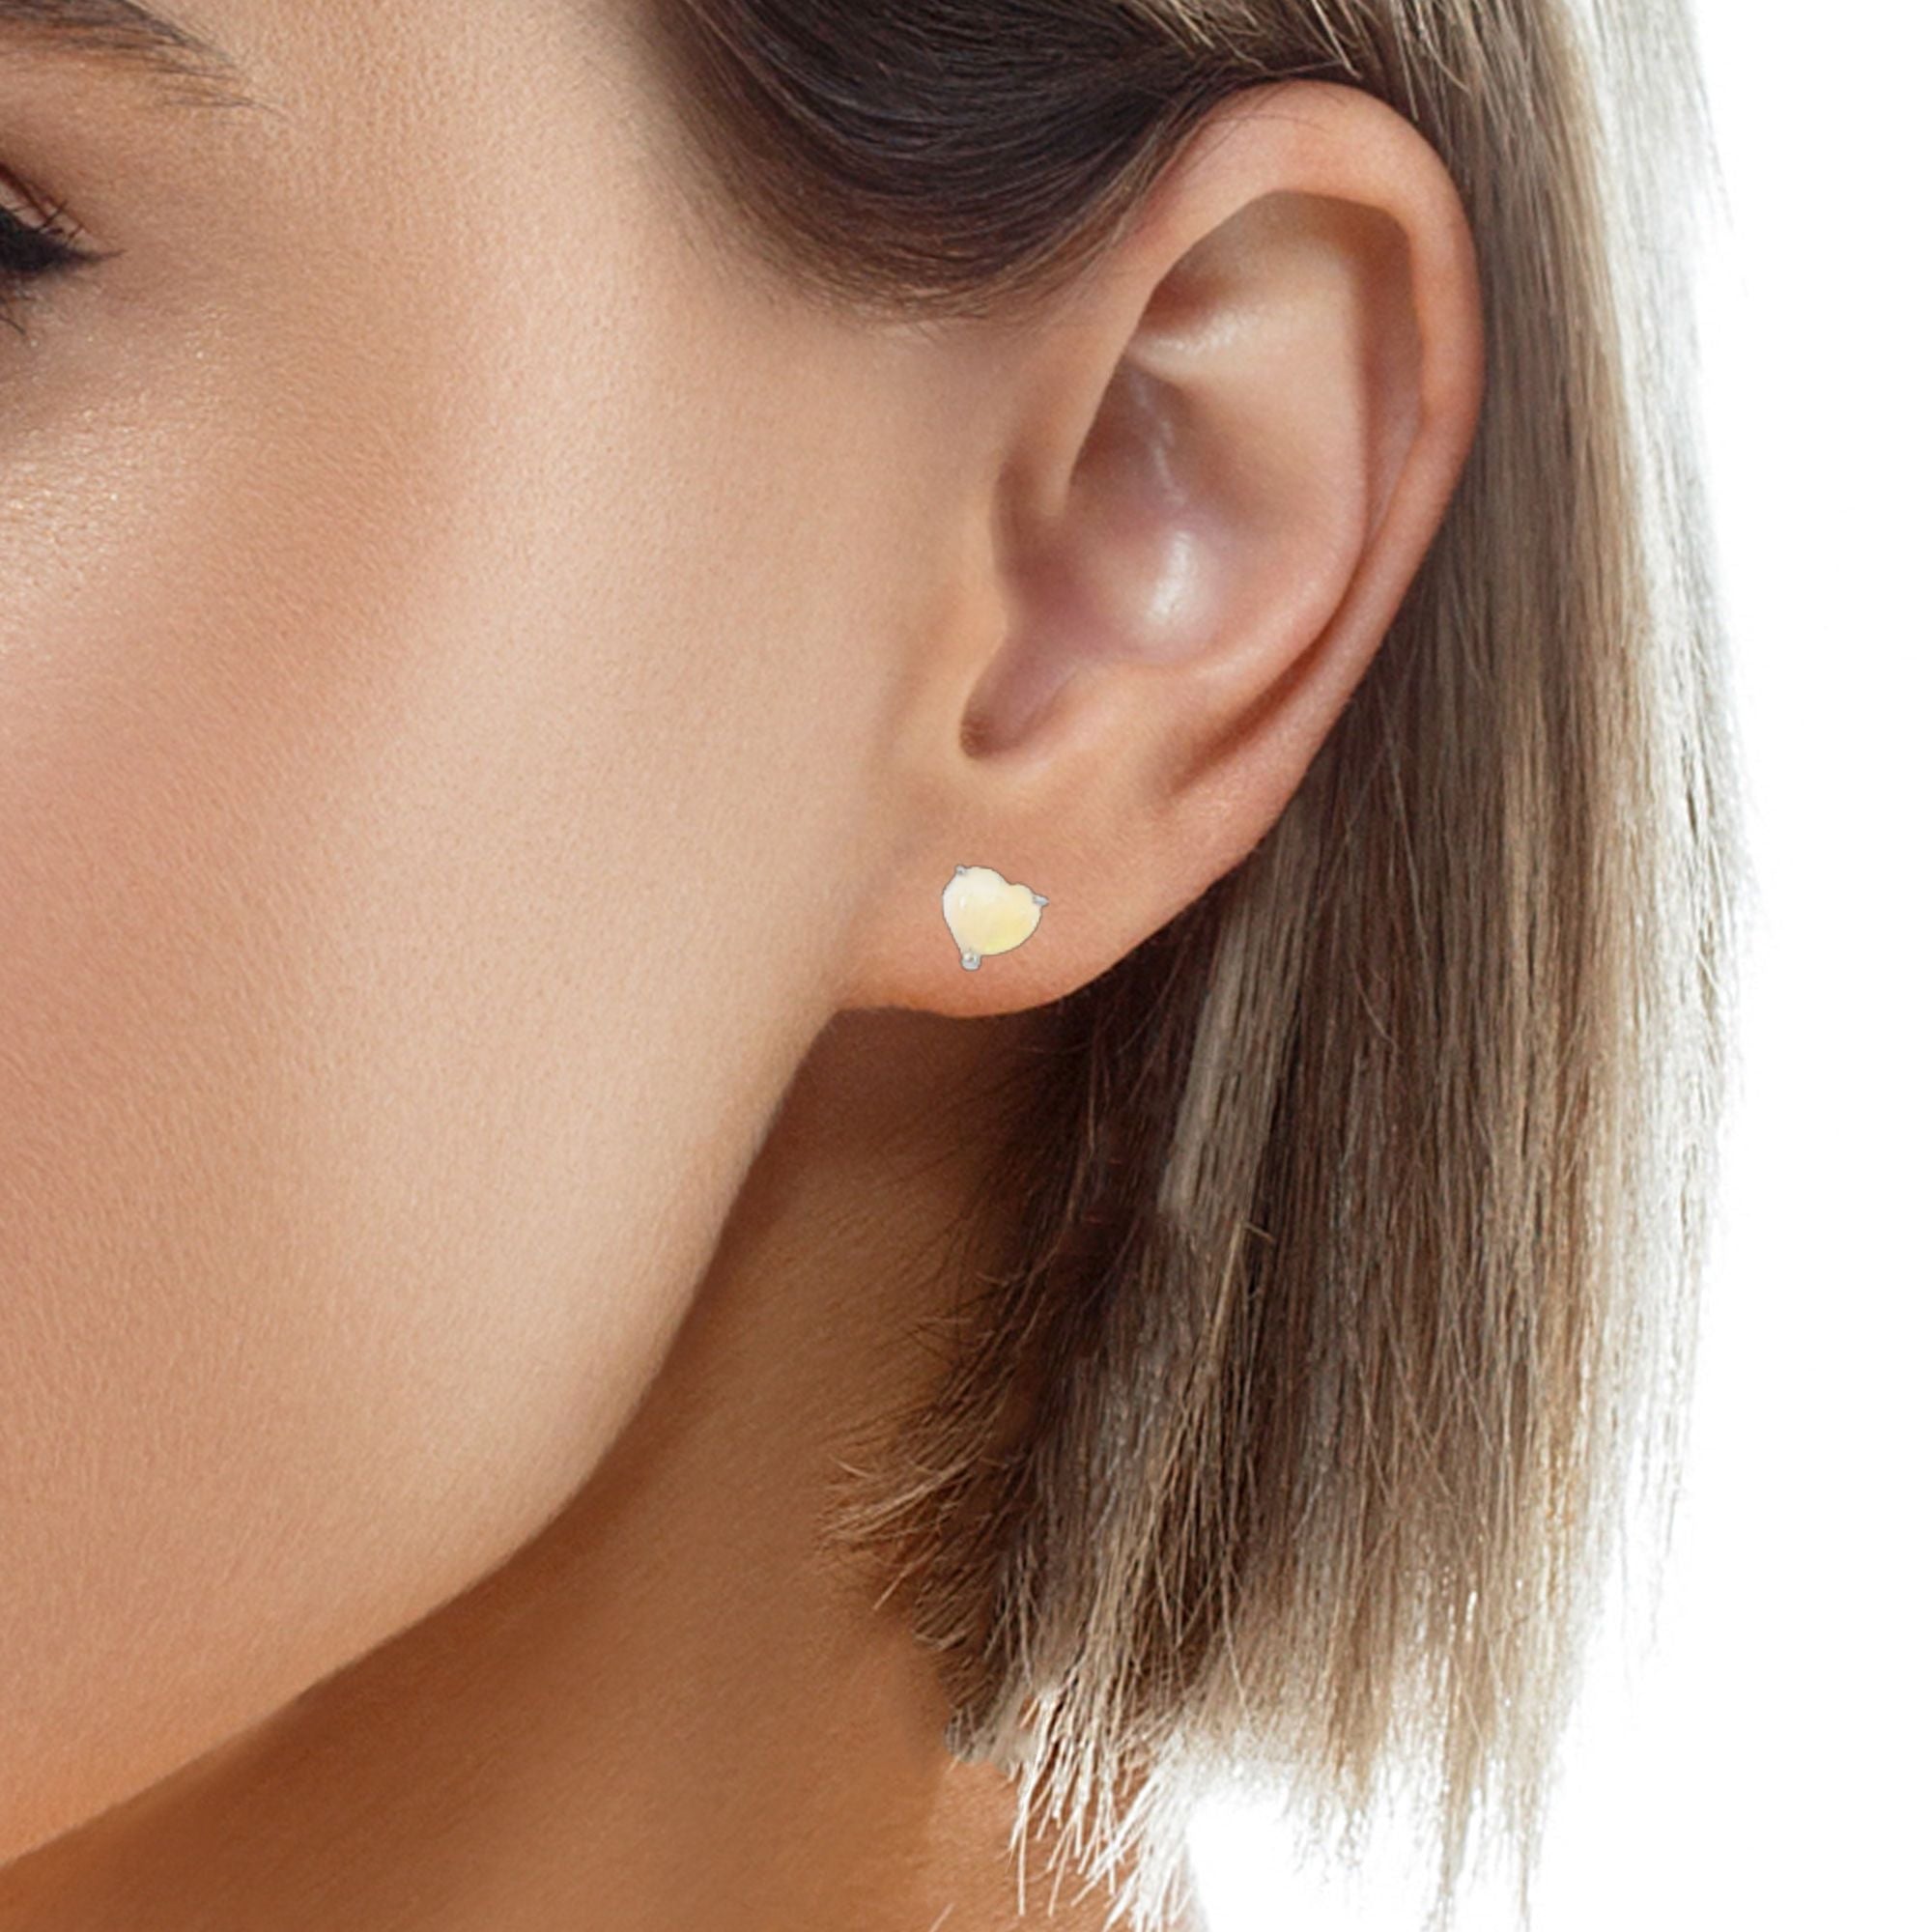 9KT White Gold Opal Stud Earrings, 6mm Heart Shape, Handmade Gift for Her, Minimalist & Dainty Gold Earrings, Cute Opal Jewelry, Birthstone Earrings - Masterpiece Jewellery Opal & Gems Sydney Australia | Online Shop